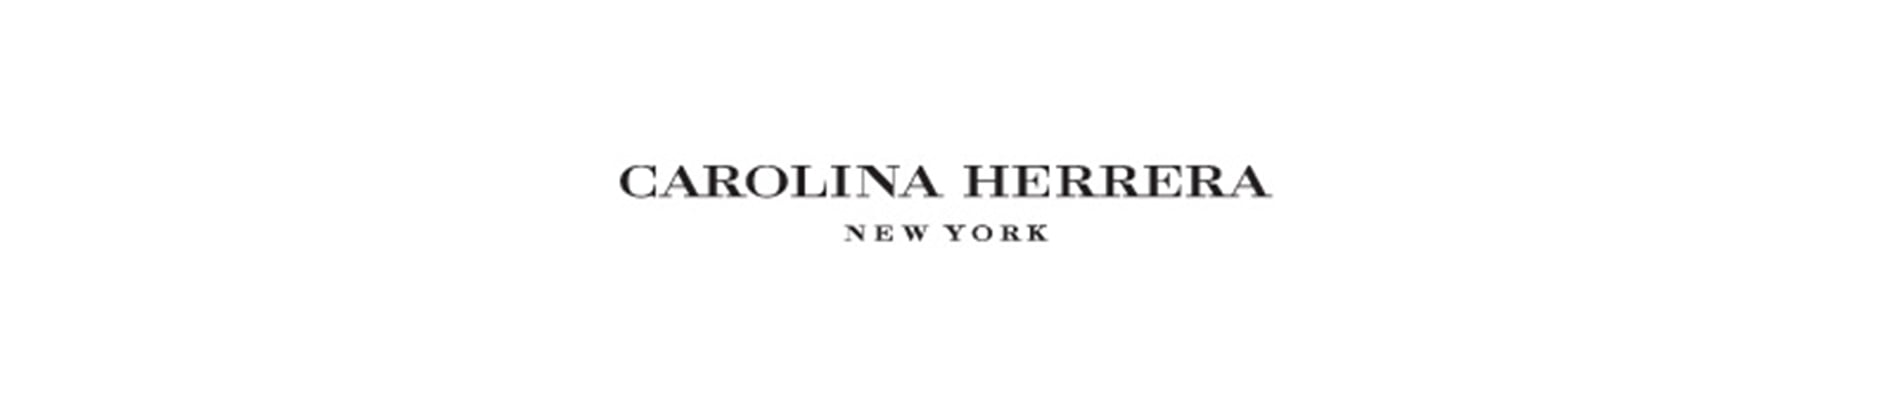 Carolina Herrera newyork designer frames header